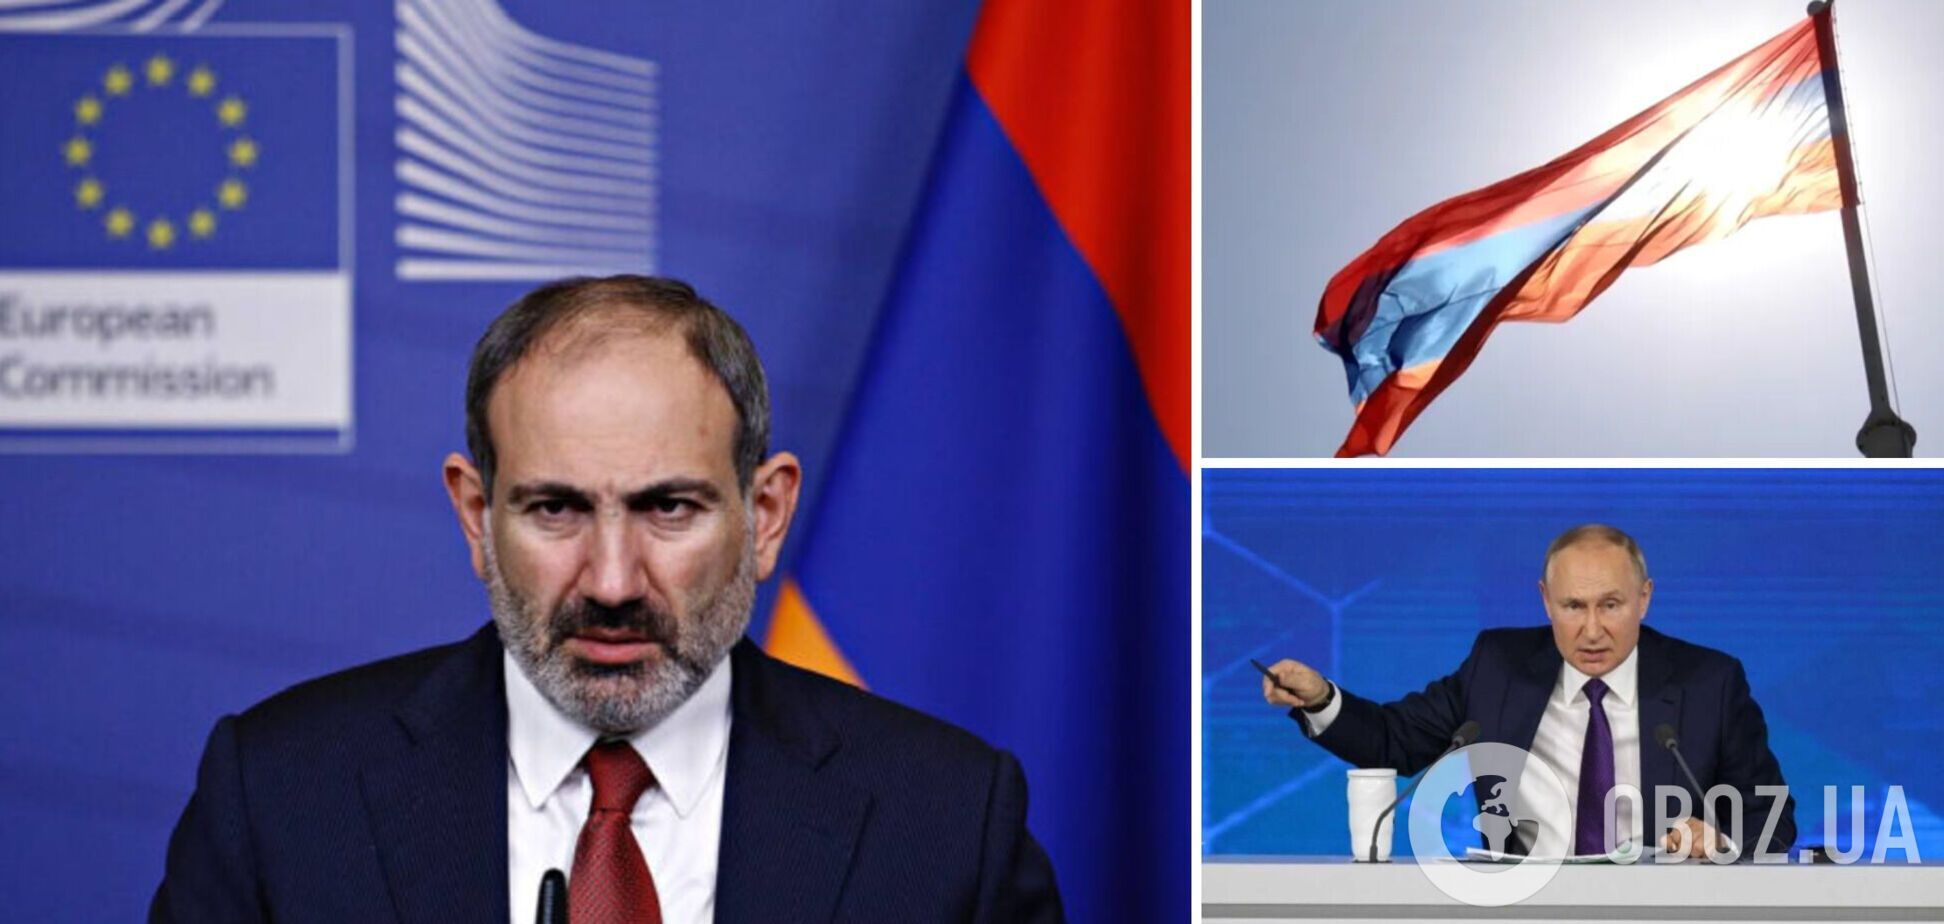 Вірменія ратифікує Римський статут: Путін стає токсичним навіть для союзників